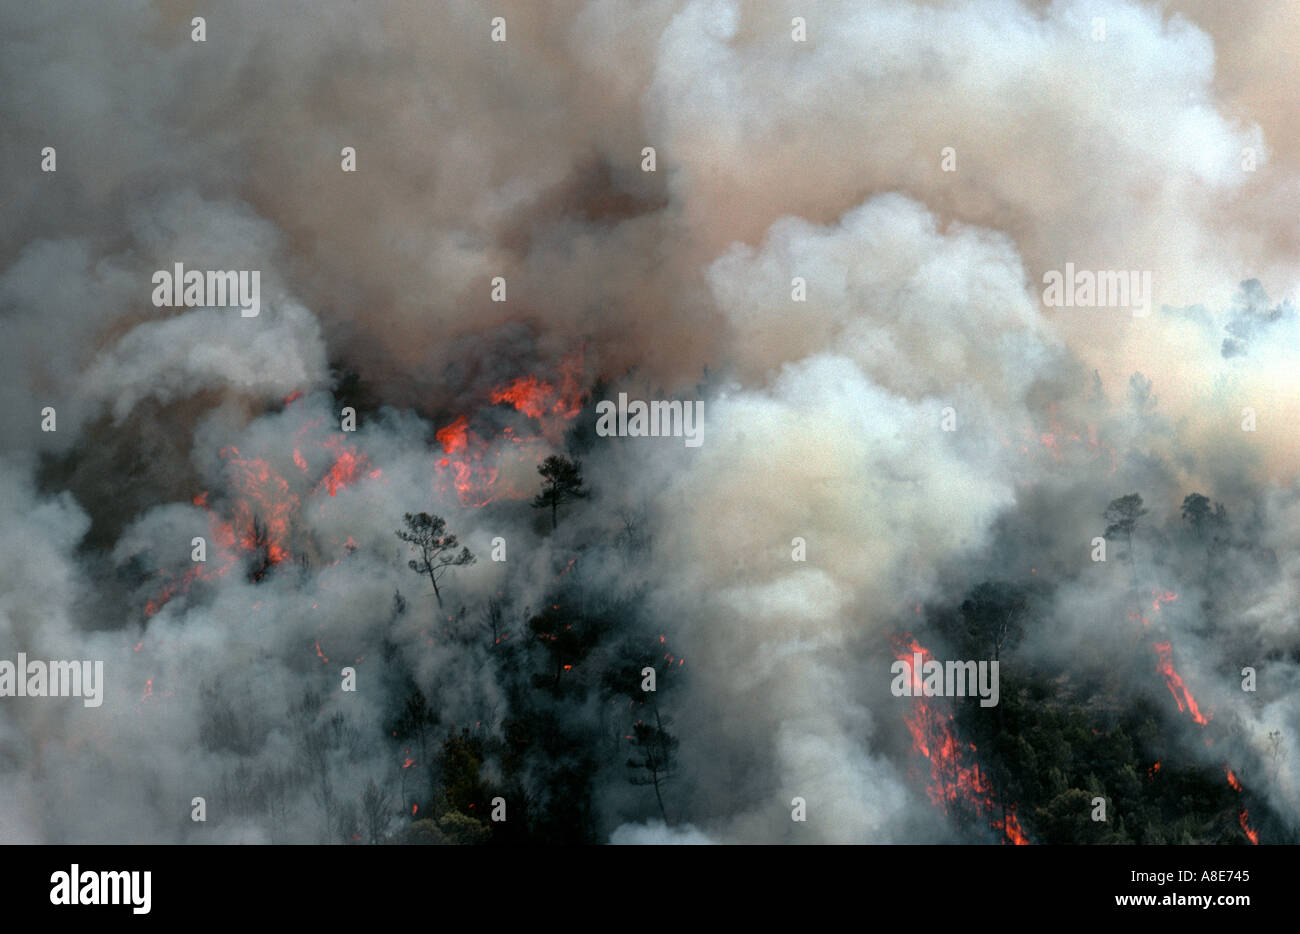 Vue aérienne d'un incendie de forêt, feu de forêt des flammes et fumée, Bouches-du-Rhône, Provence, France, Europe, Banque D'Images